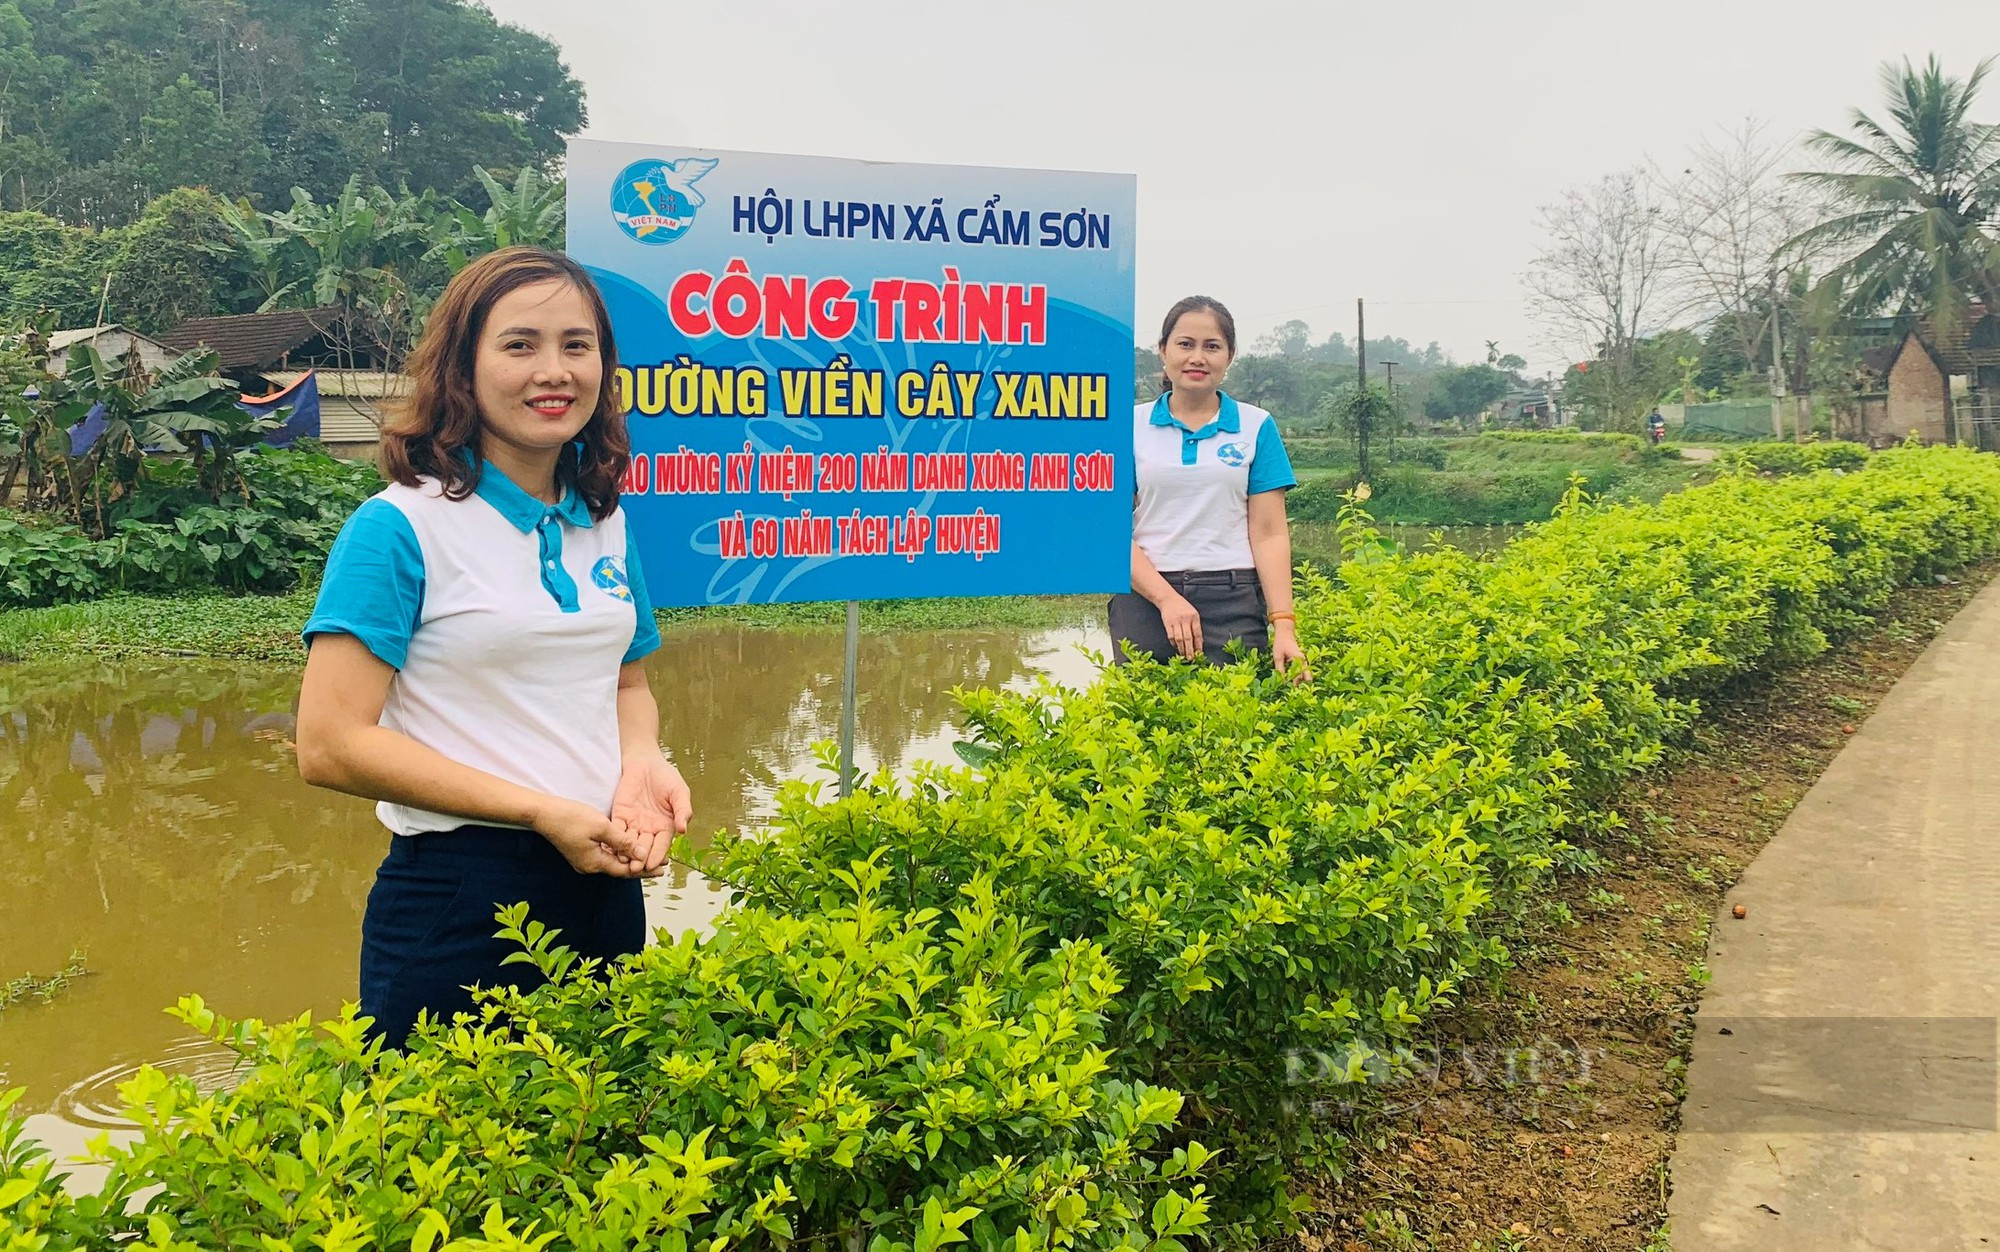 Phụ nữ ở huyện này của Nghệ An hò nhau góp tiền trồng vườn hoa, đường cây chuỗi ngọc đẹp như phim - Ảnh 6.